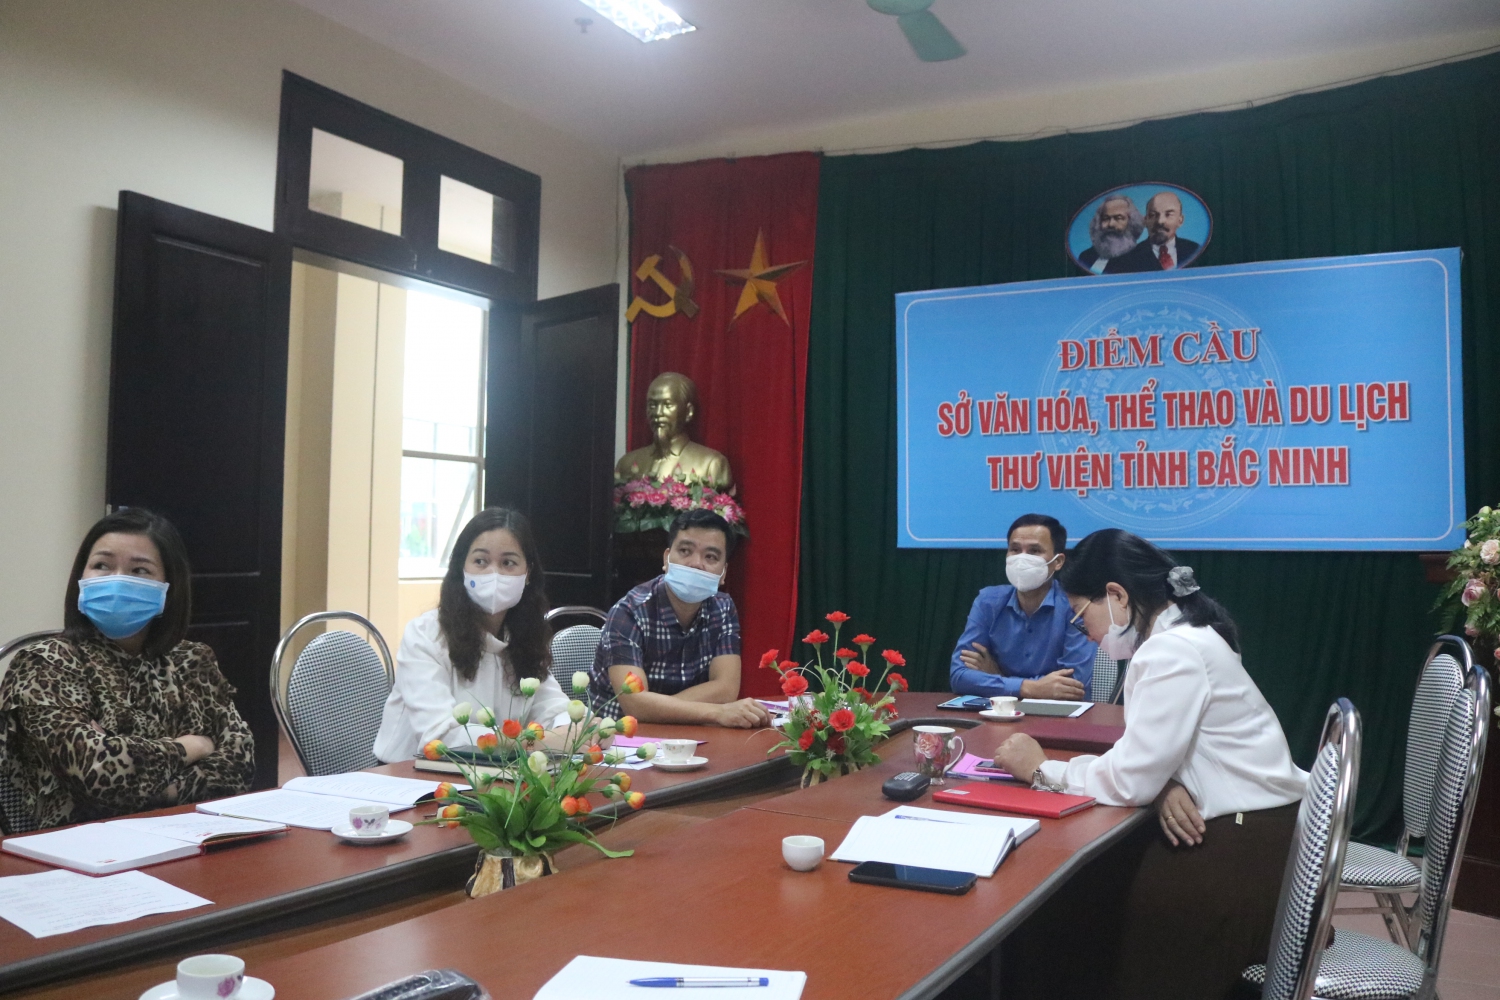 Sở Văn hóa, Thể thao và Du lịch Bắc Ninh, Thư viện tỉnh Bắc Ninh tham dự Hội nghị tập huấn “Triển khai các văn bản quy phạm pháp luật mới trong lĩnh vực thư viện” theo hình thức trực tuyến